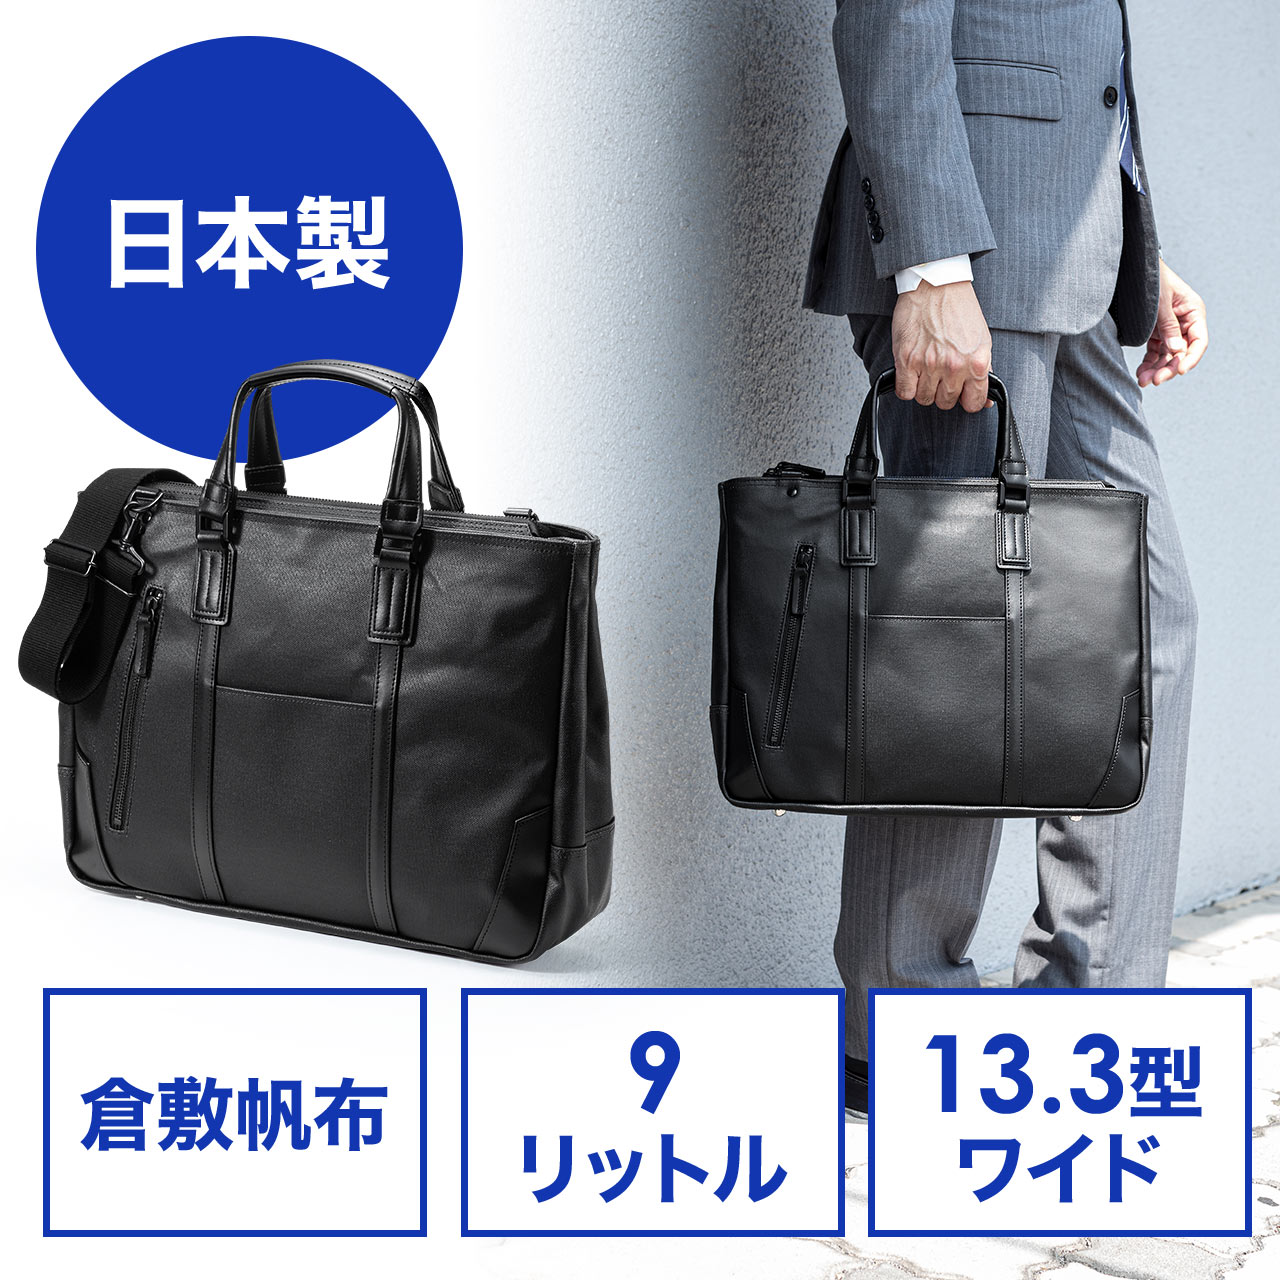 倉敷帆布ビジネスバッグ A4ファイル 13.3型ノートPC収納 豊岡 日本 